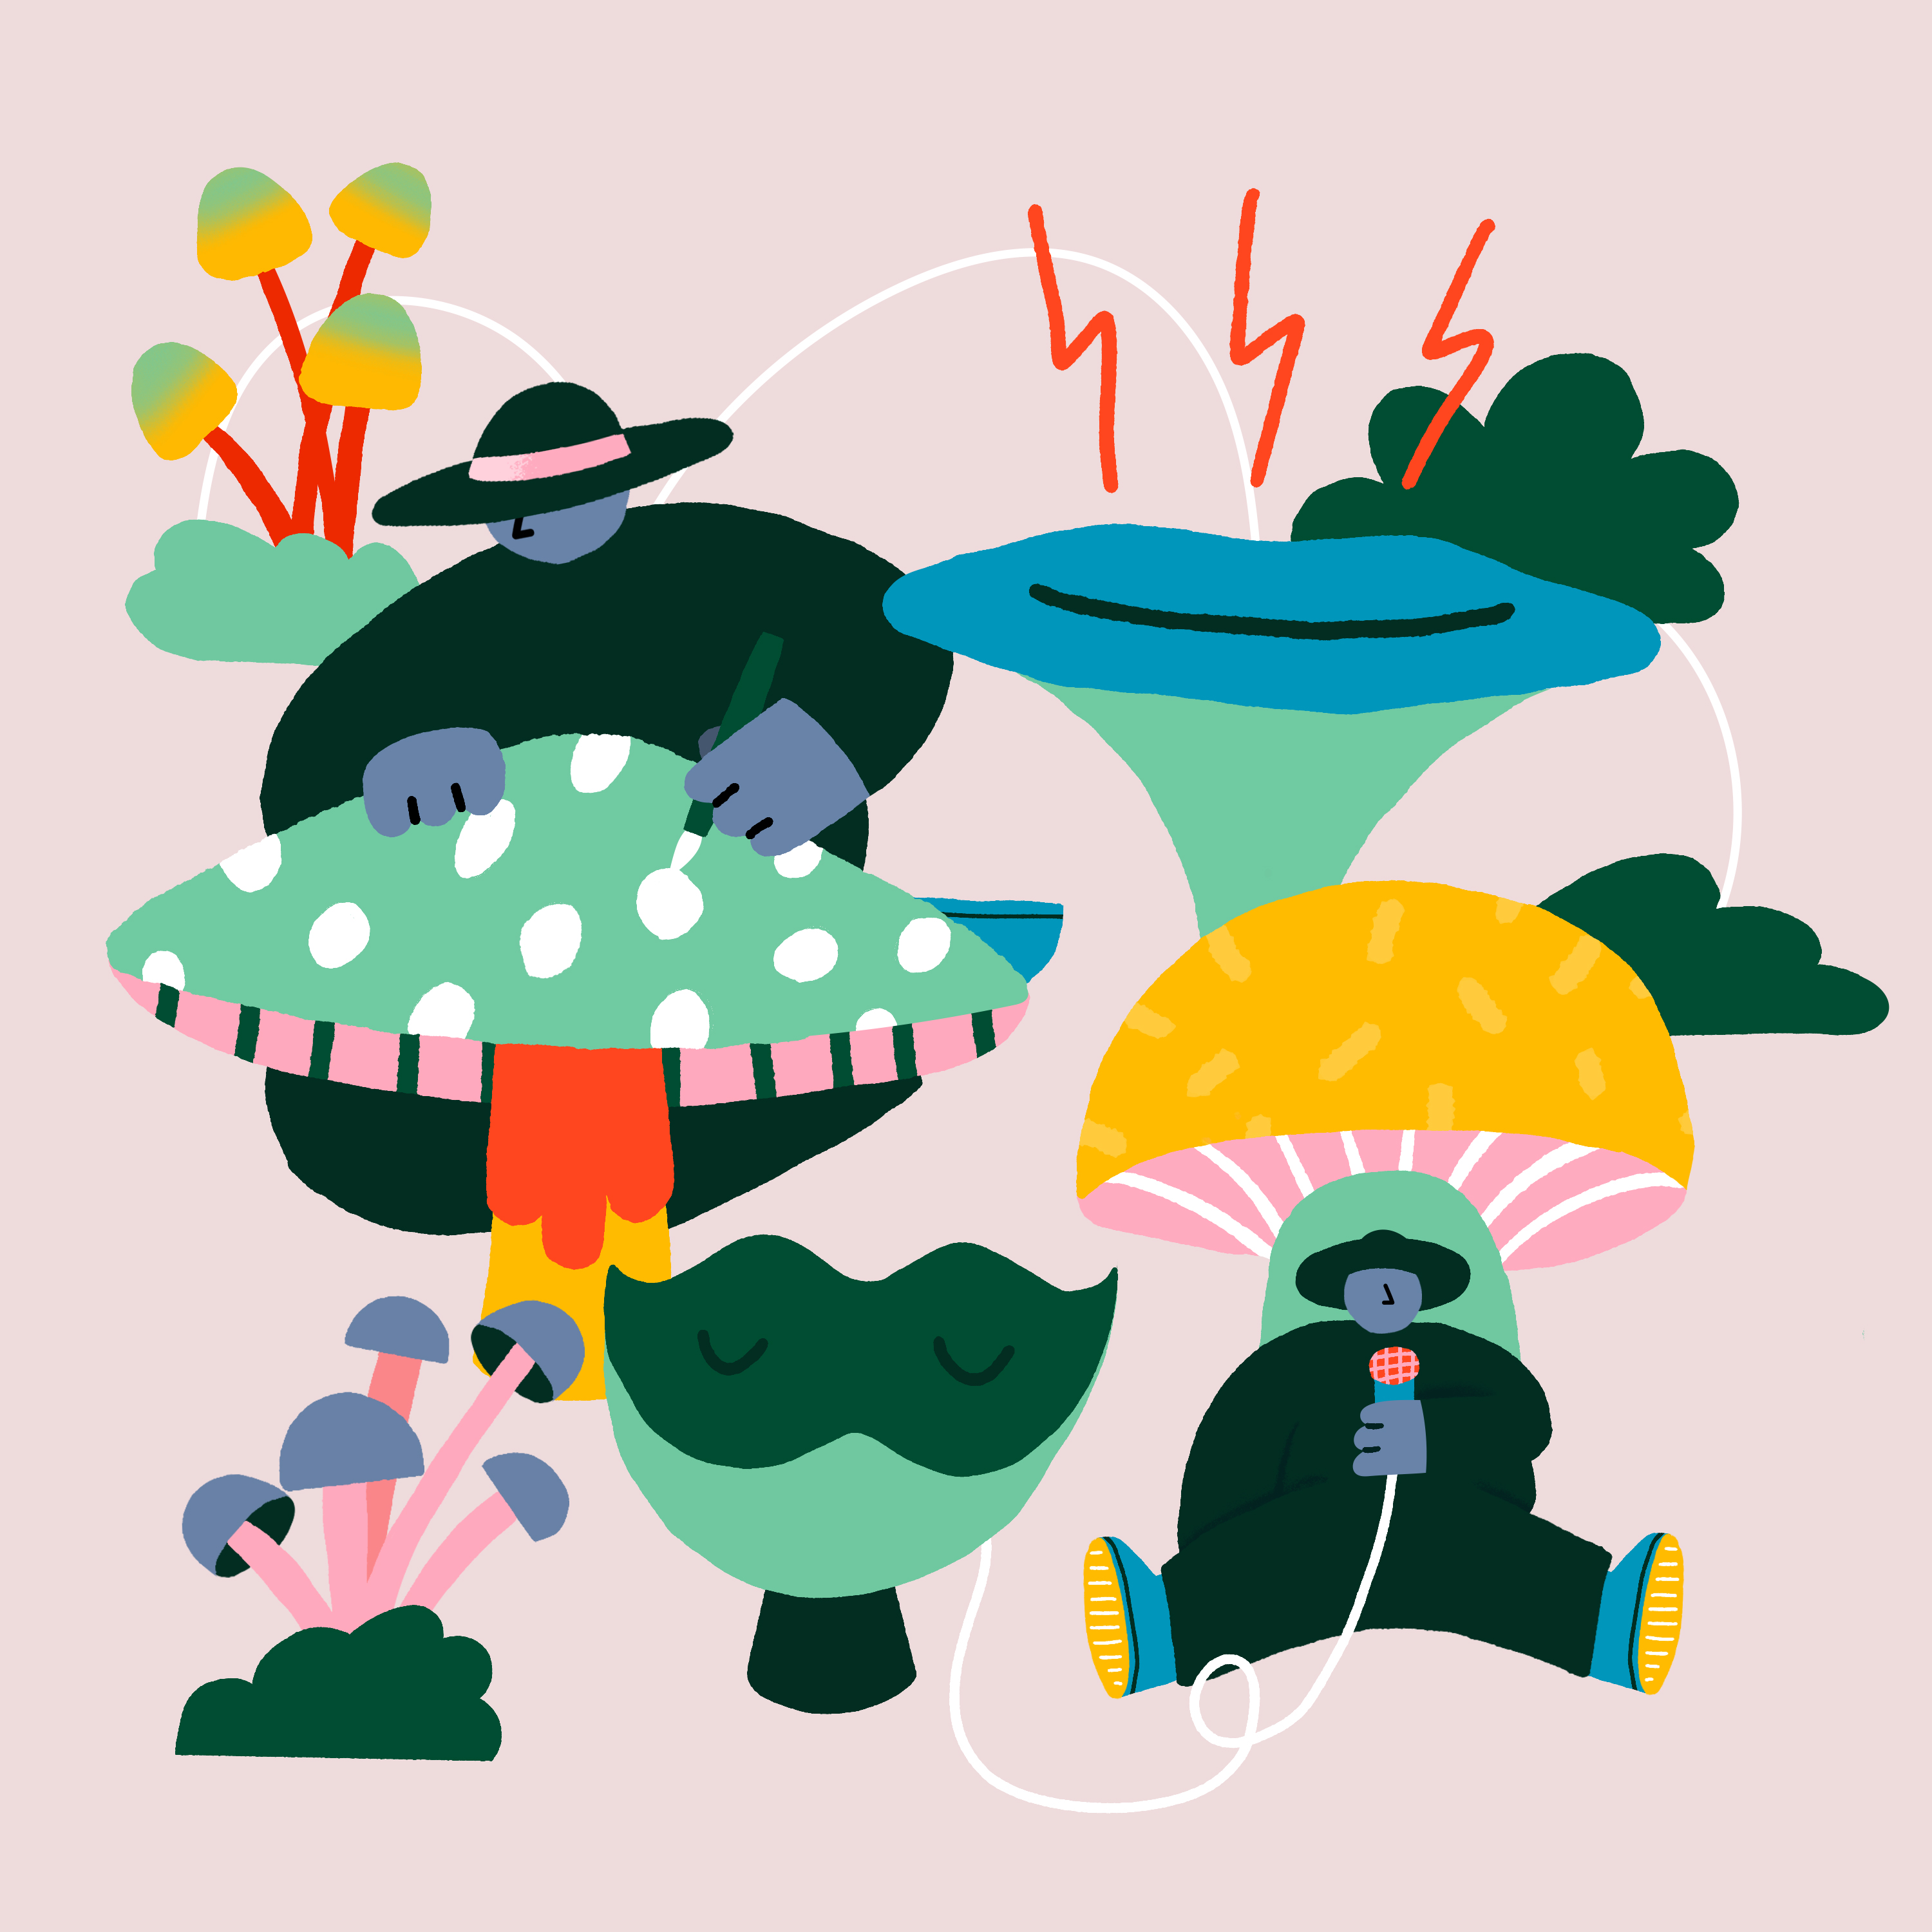 diversity mushroom illustration